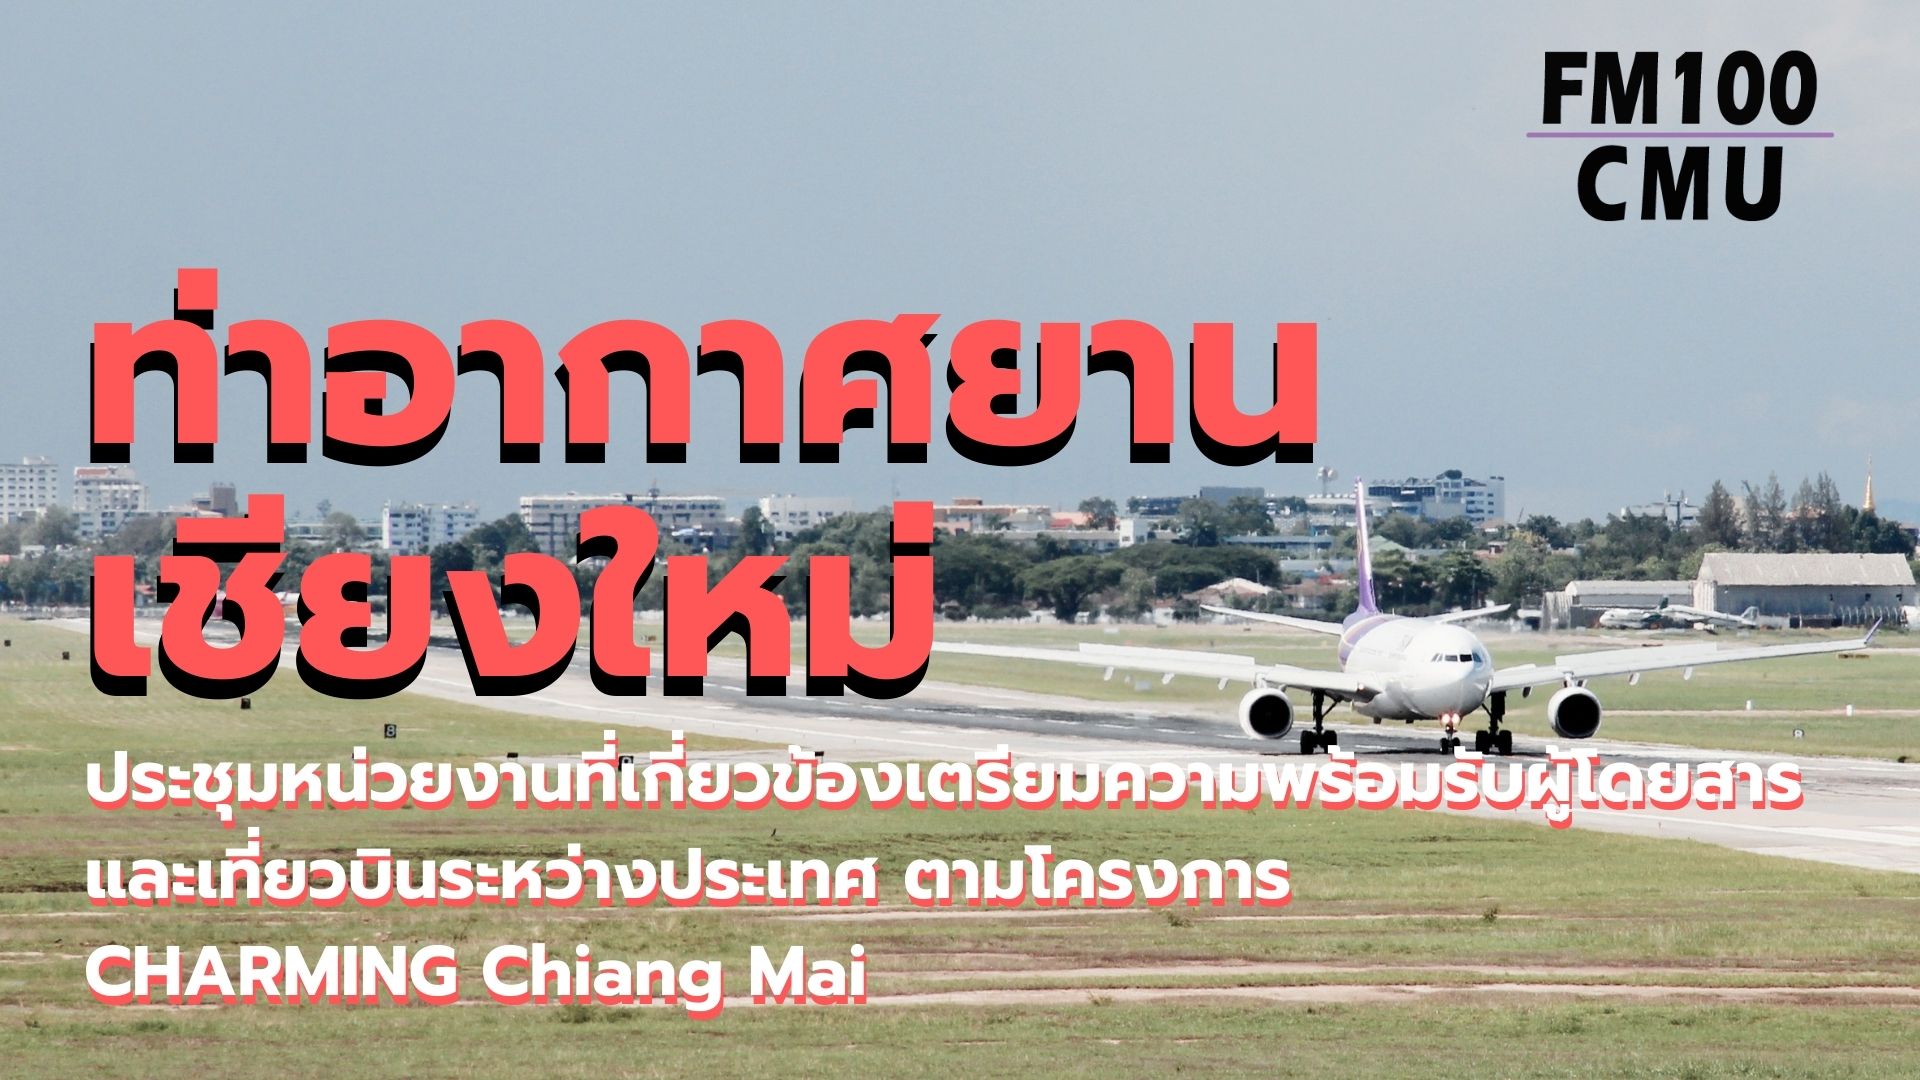 ท่าอากาศยานเชียงใหม่ ประชุมหน่วยงานที่เกี่ยวข้องเตรียมความพร้อมรับผู้โดยสารและเที่ยวบินระหว่างประเทศ ตามโครงการ CHARMING Chiang Mai 